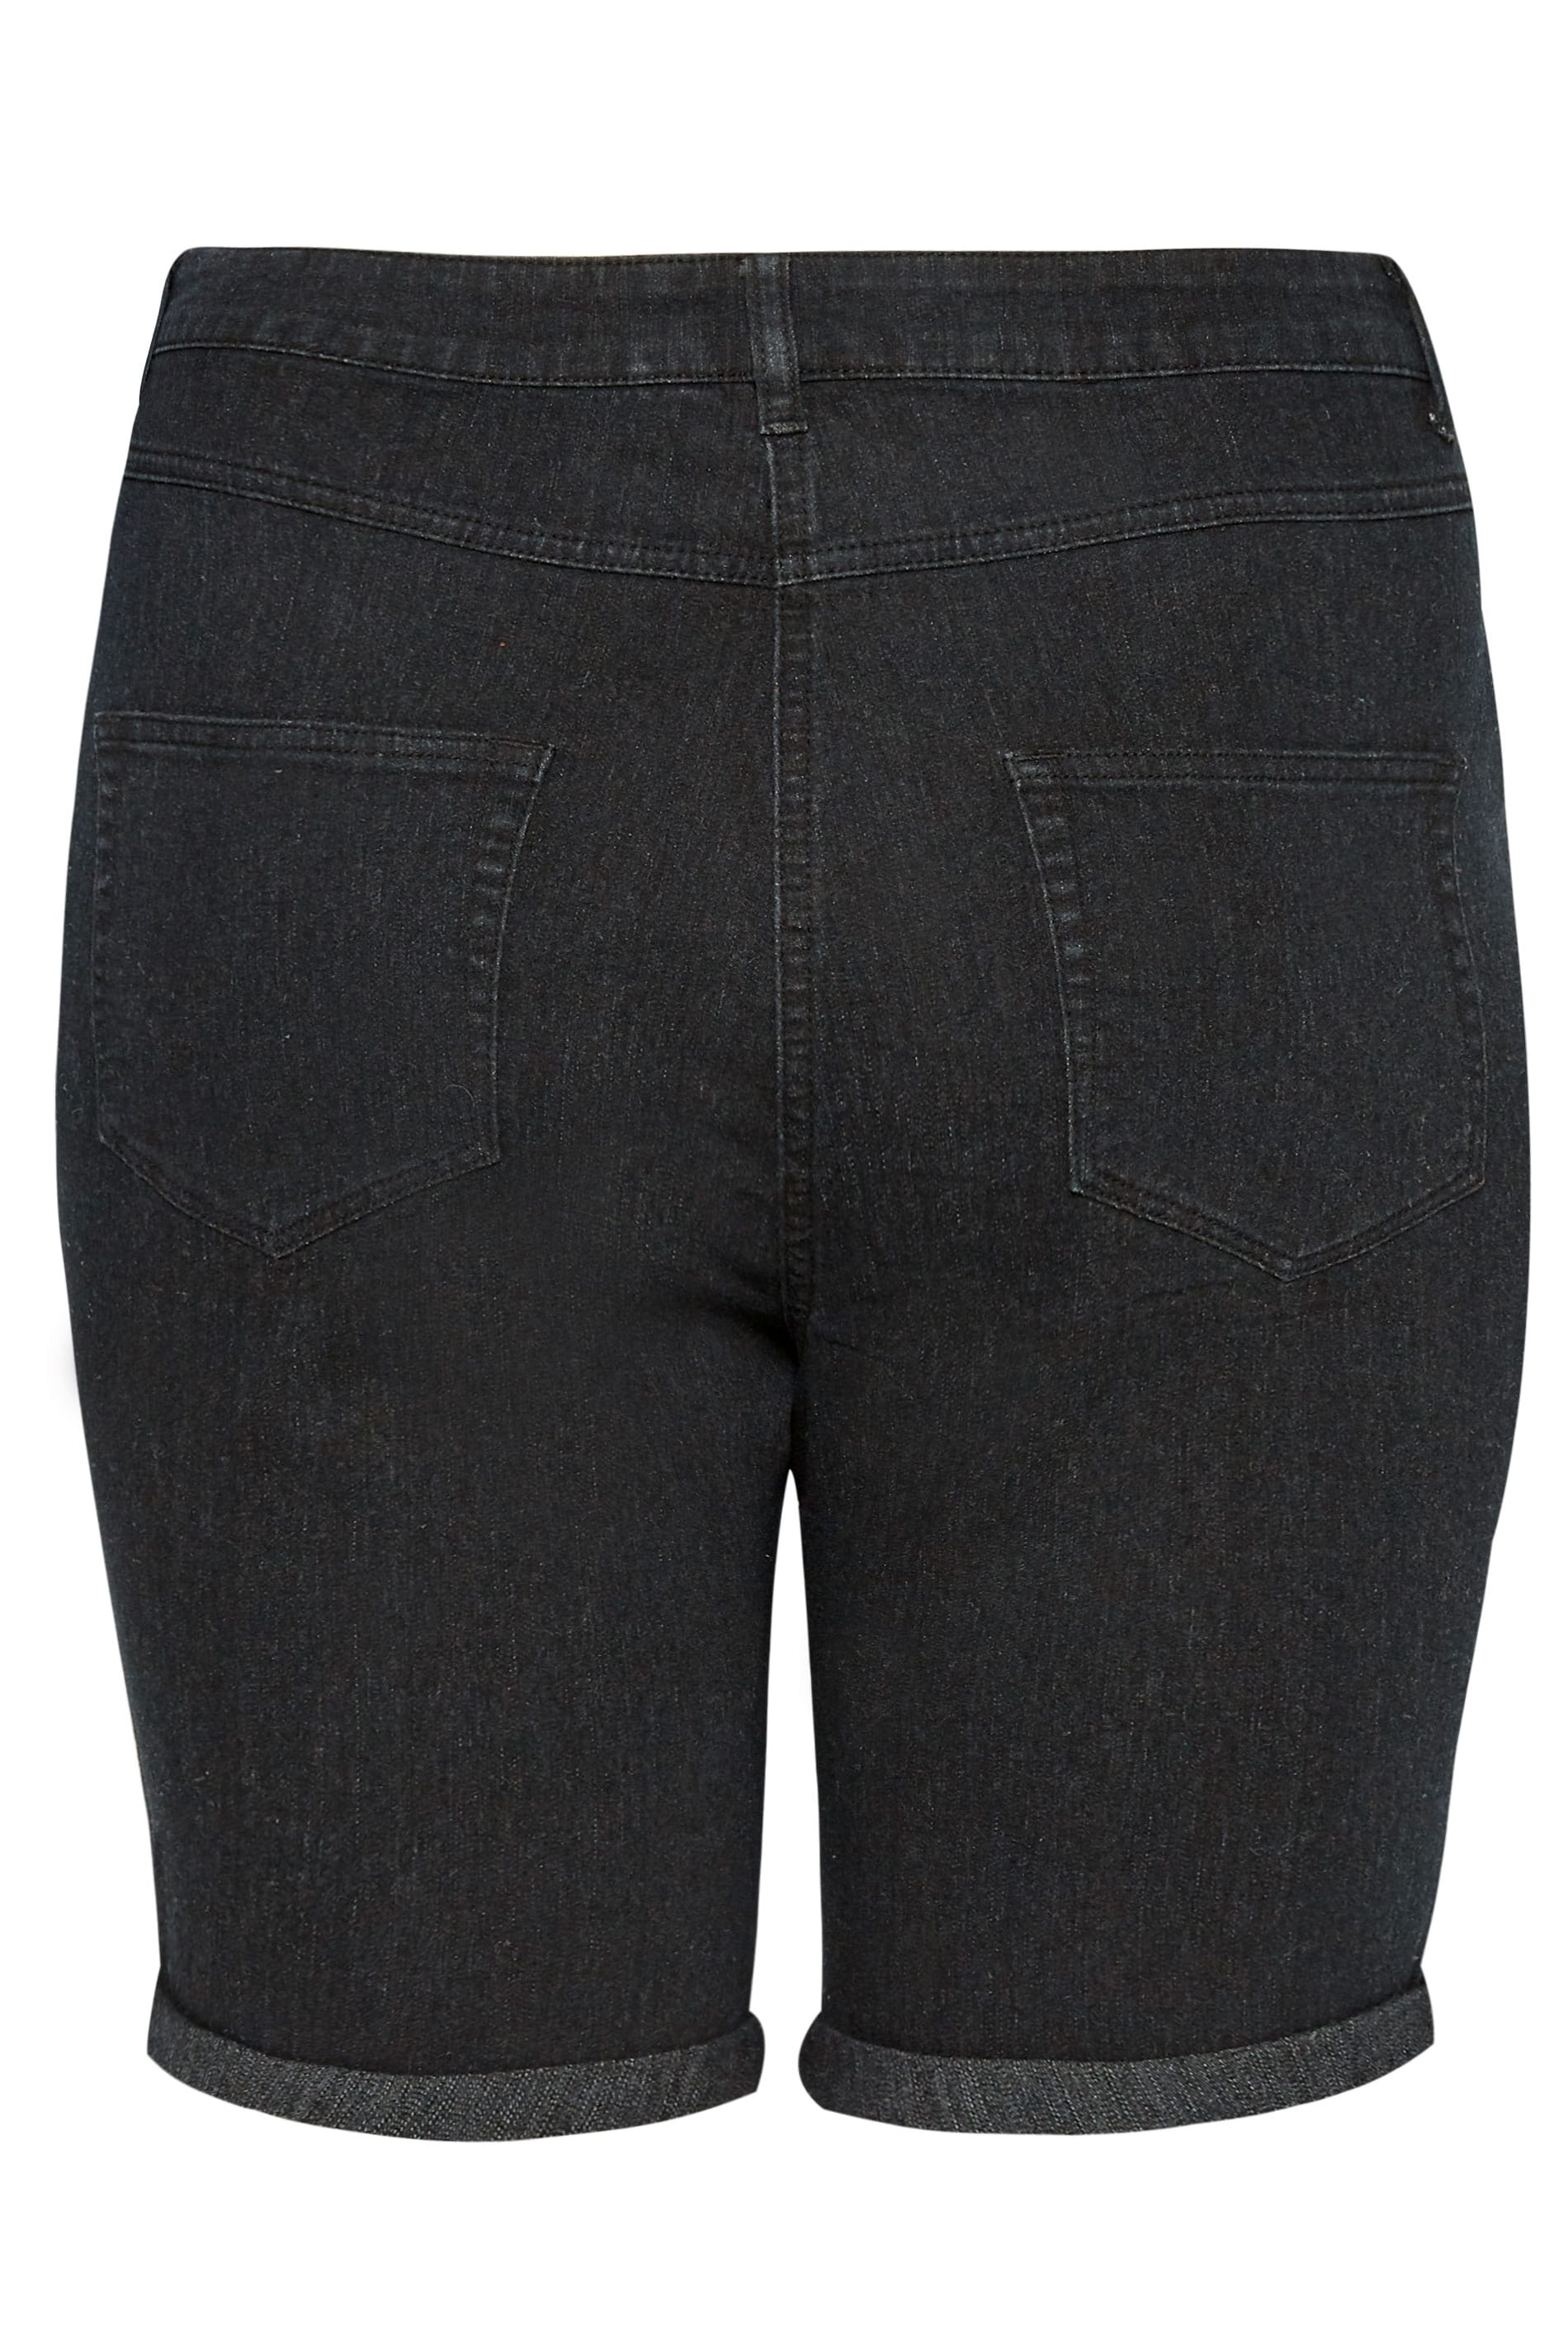 Black Denim Shorts | Sizes 16 to 36 | Yours Clothing